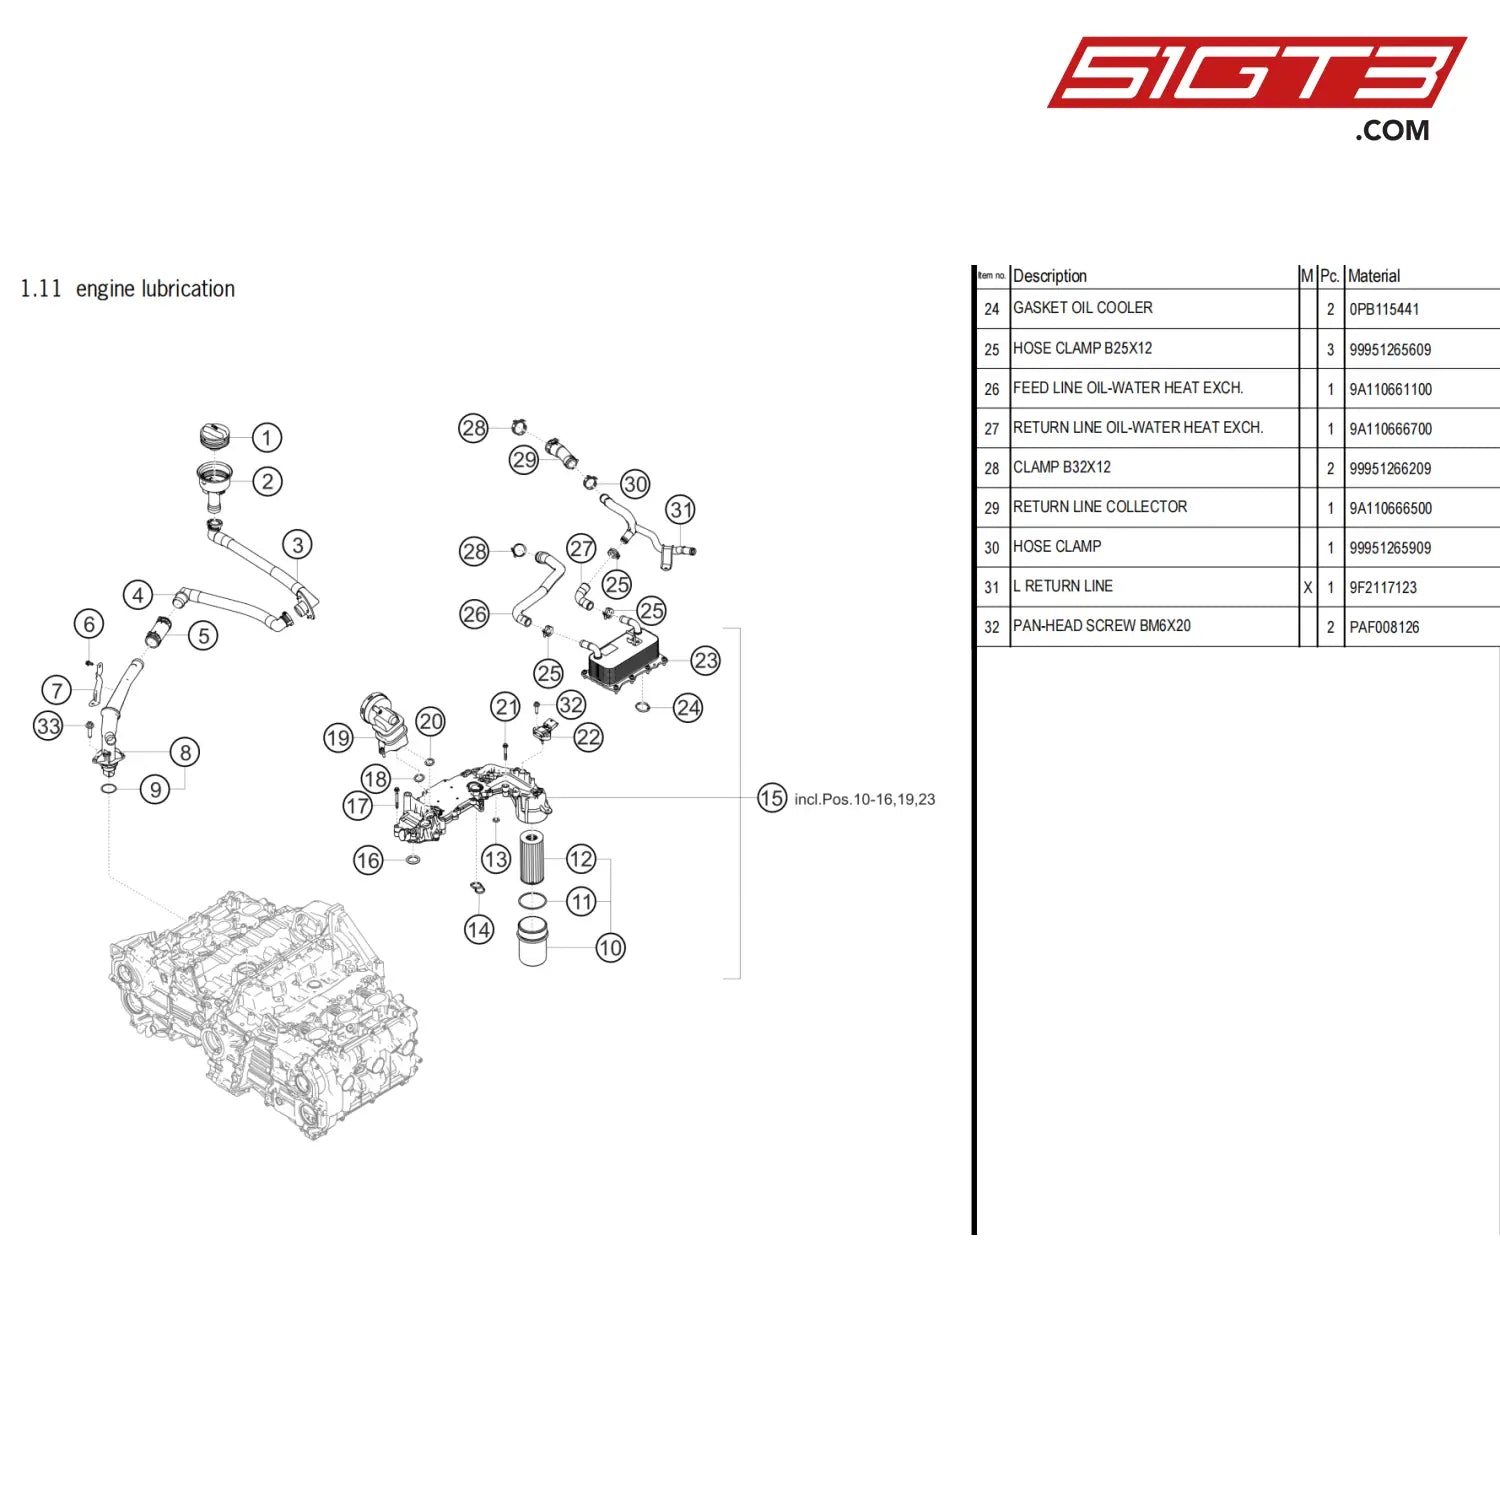 Filter Element - 0Pb115466A [Porsche 718 Cayman Gt4 Clubsport] Engine Lubrication